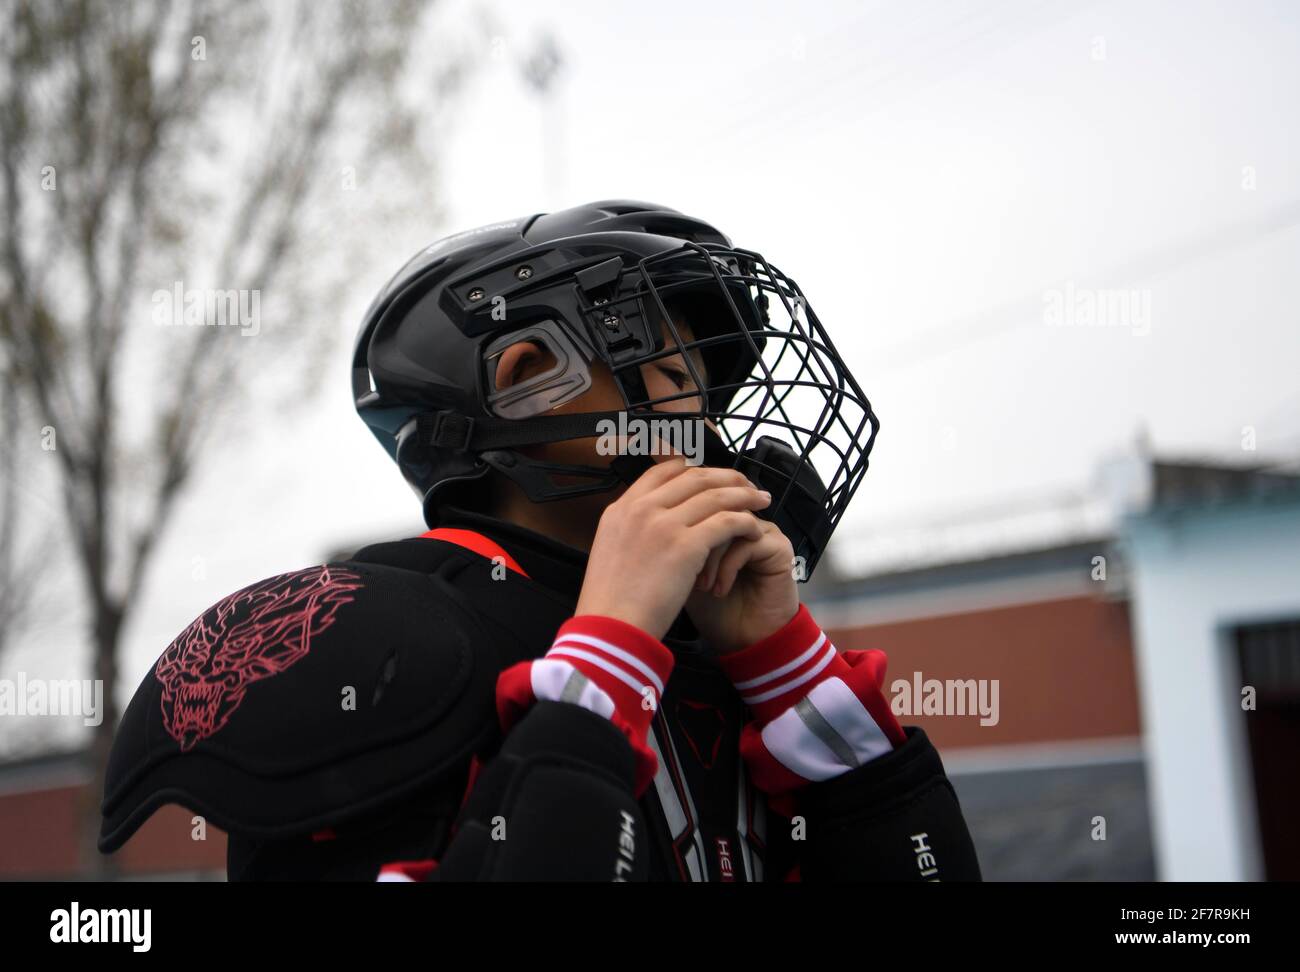 210409) -- DENGFENG, 9 avril 2021 (Xinhua) -- UN joueur de l'équipe de  hockey sur glace Shaolin Tagou met son casque à l'école d'arts martiaux  Shaolin Tagou, Dengfeng City, province de Henan,